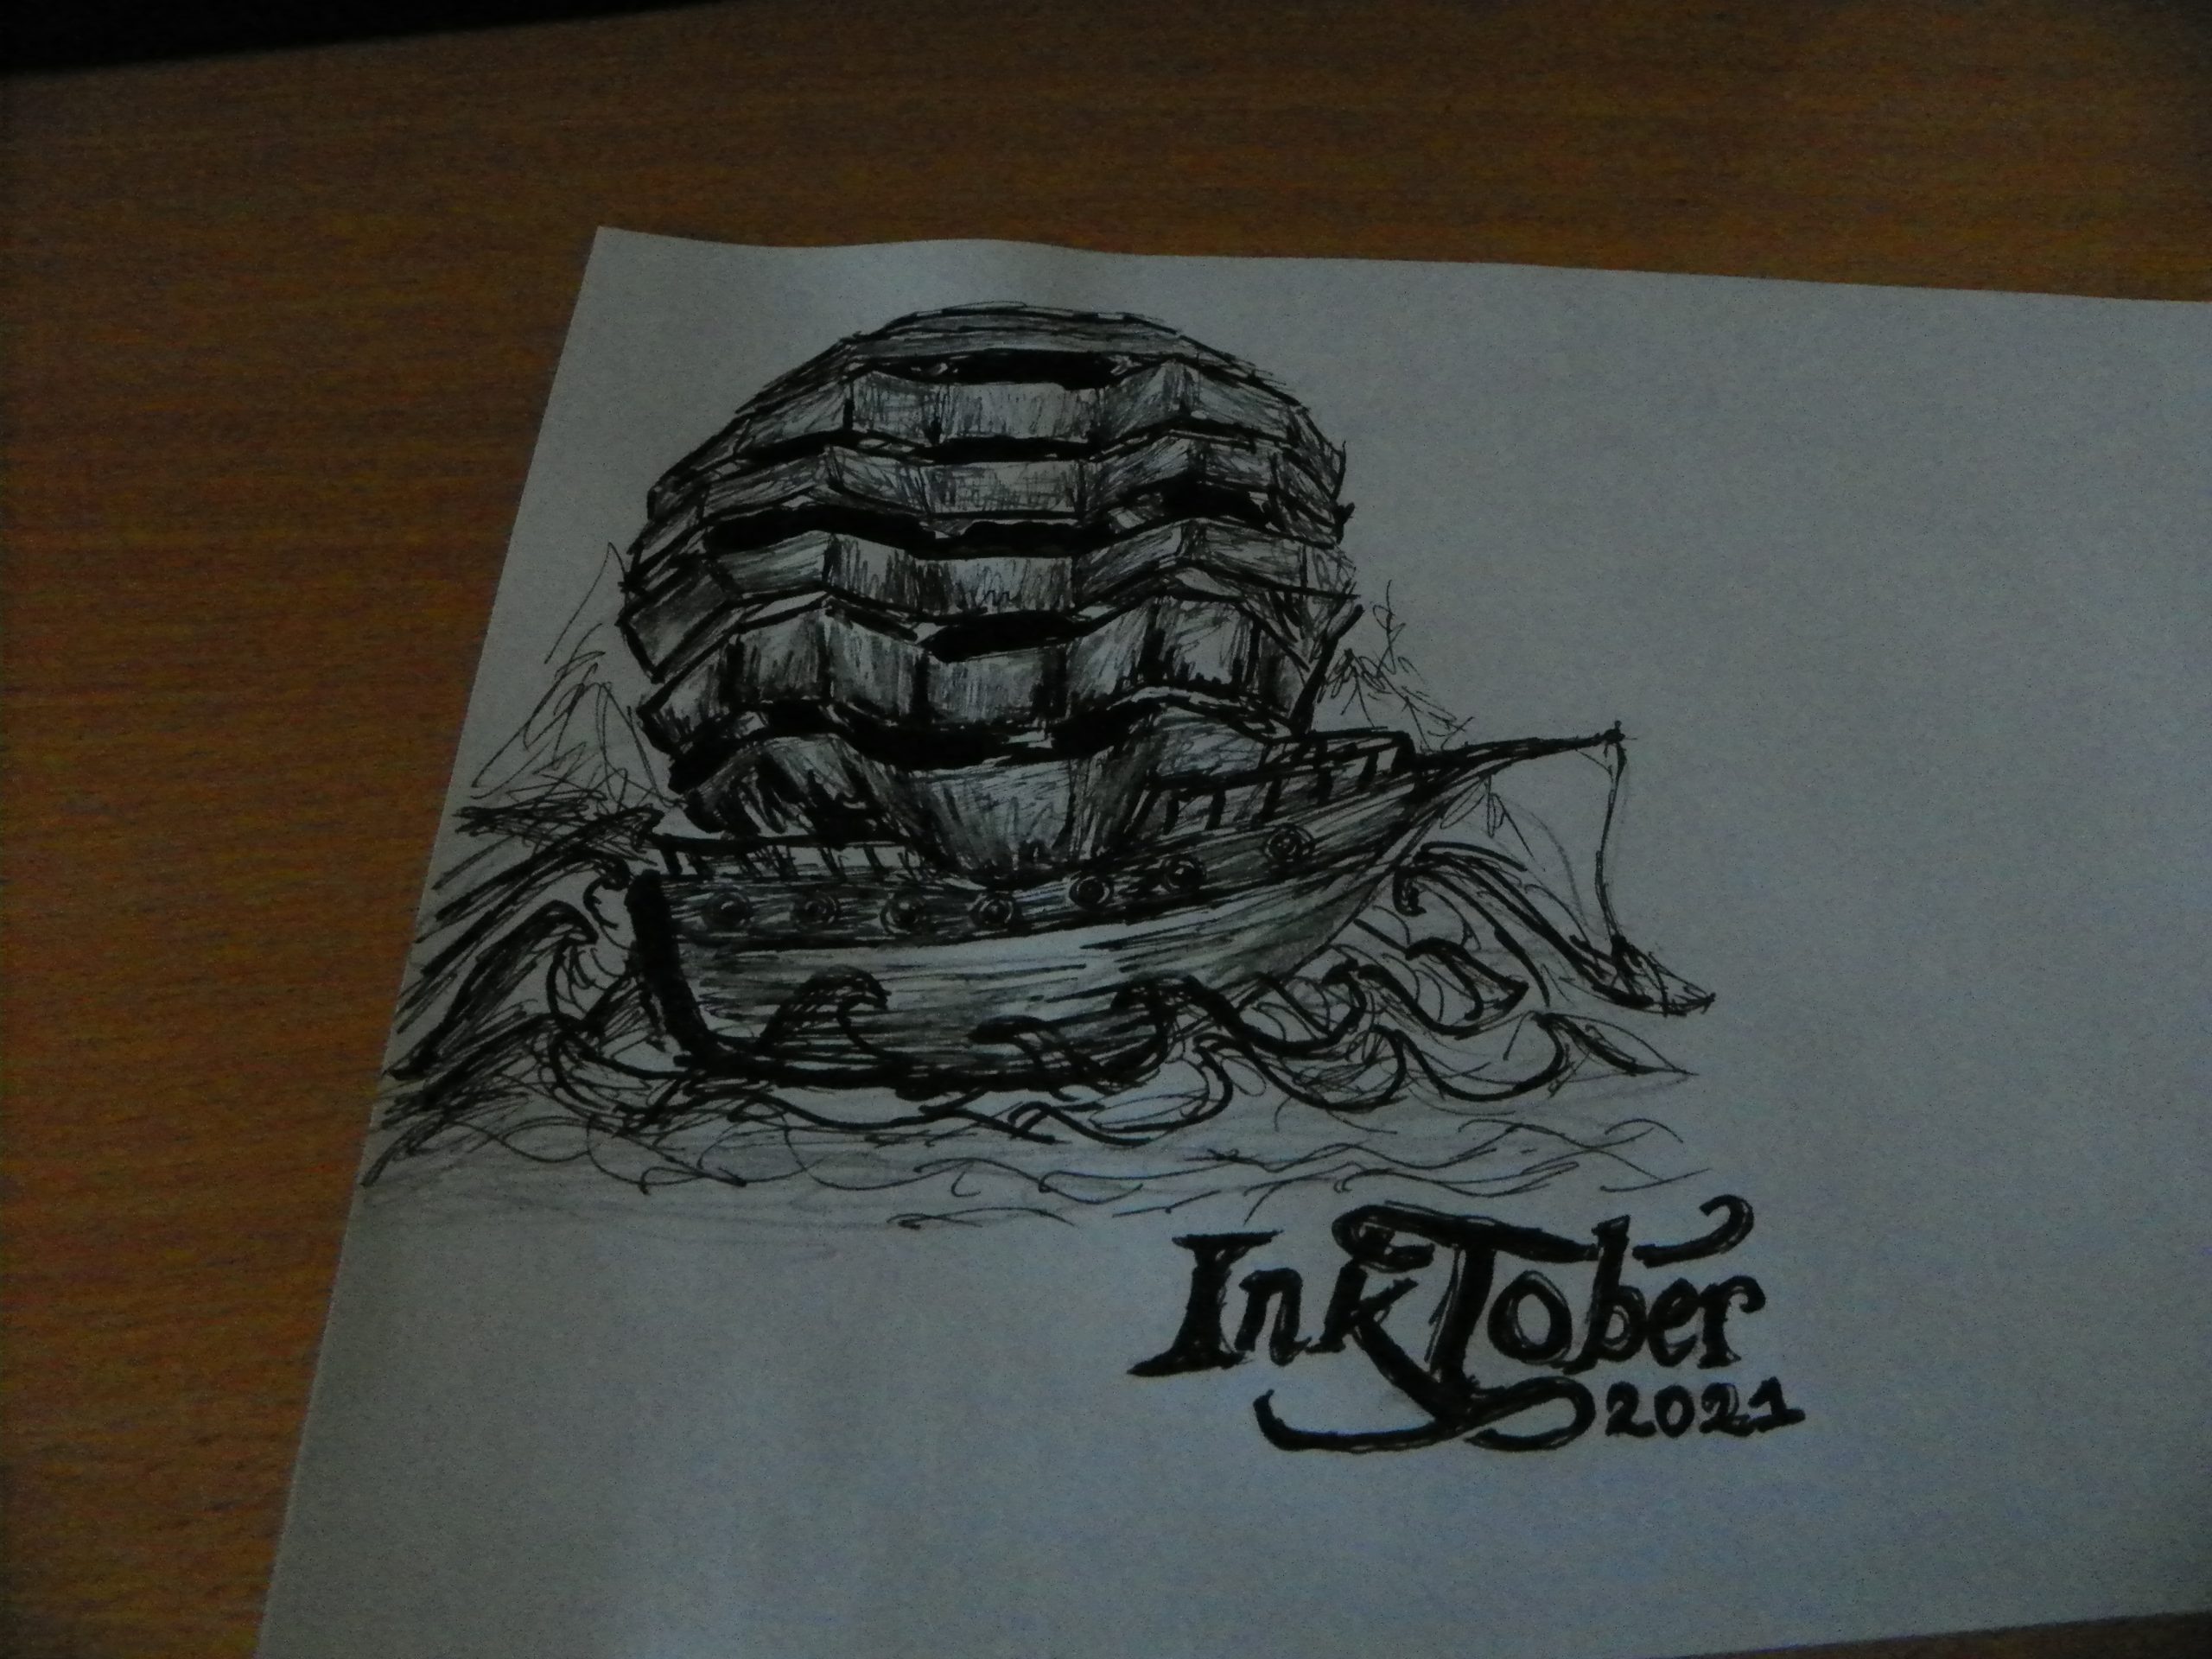 drawings vessel inktober 3